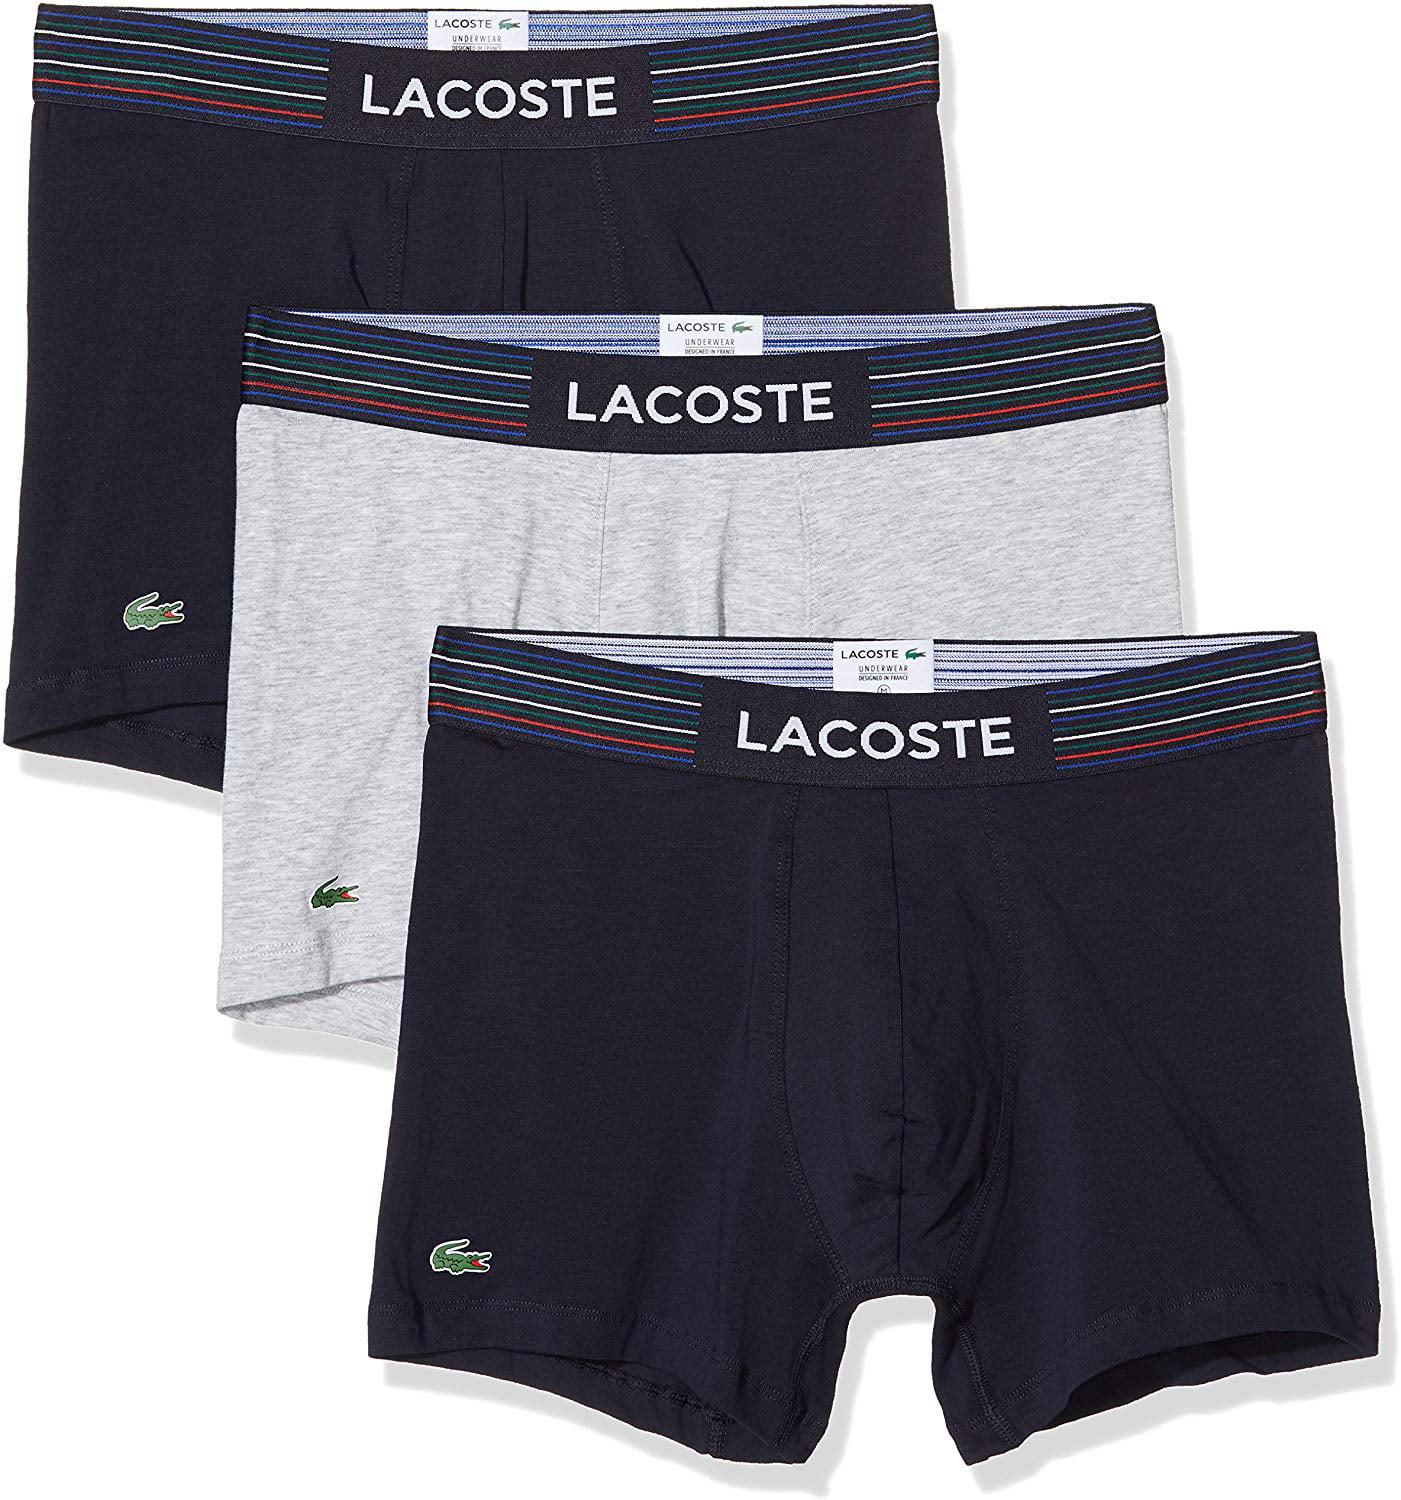 Lacoste Colours Signature Croc 3 Pack Boxer Shorts